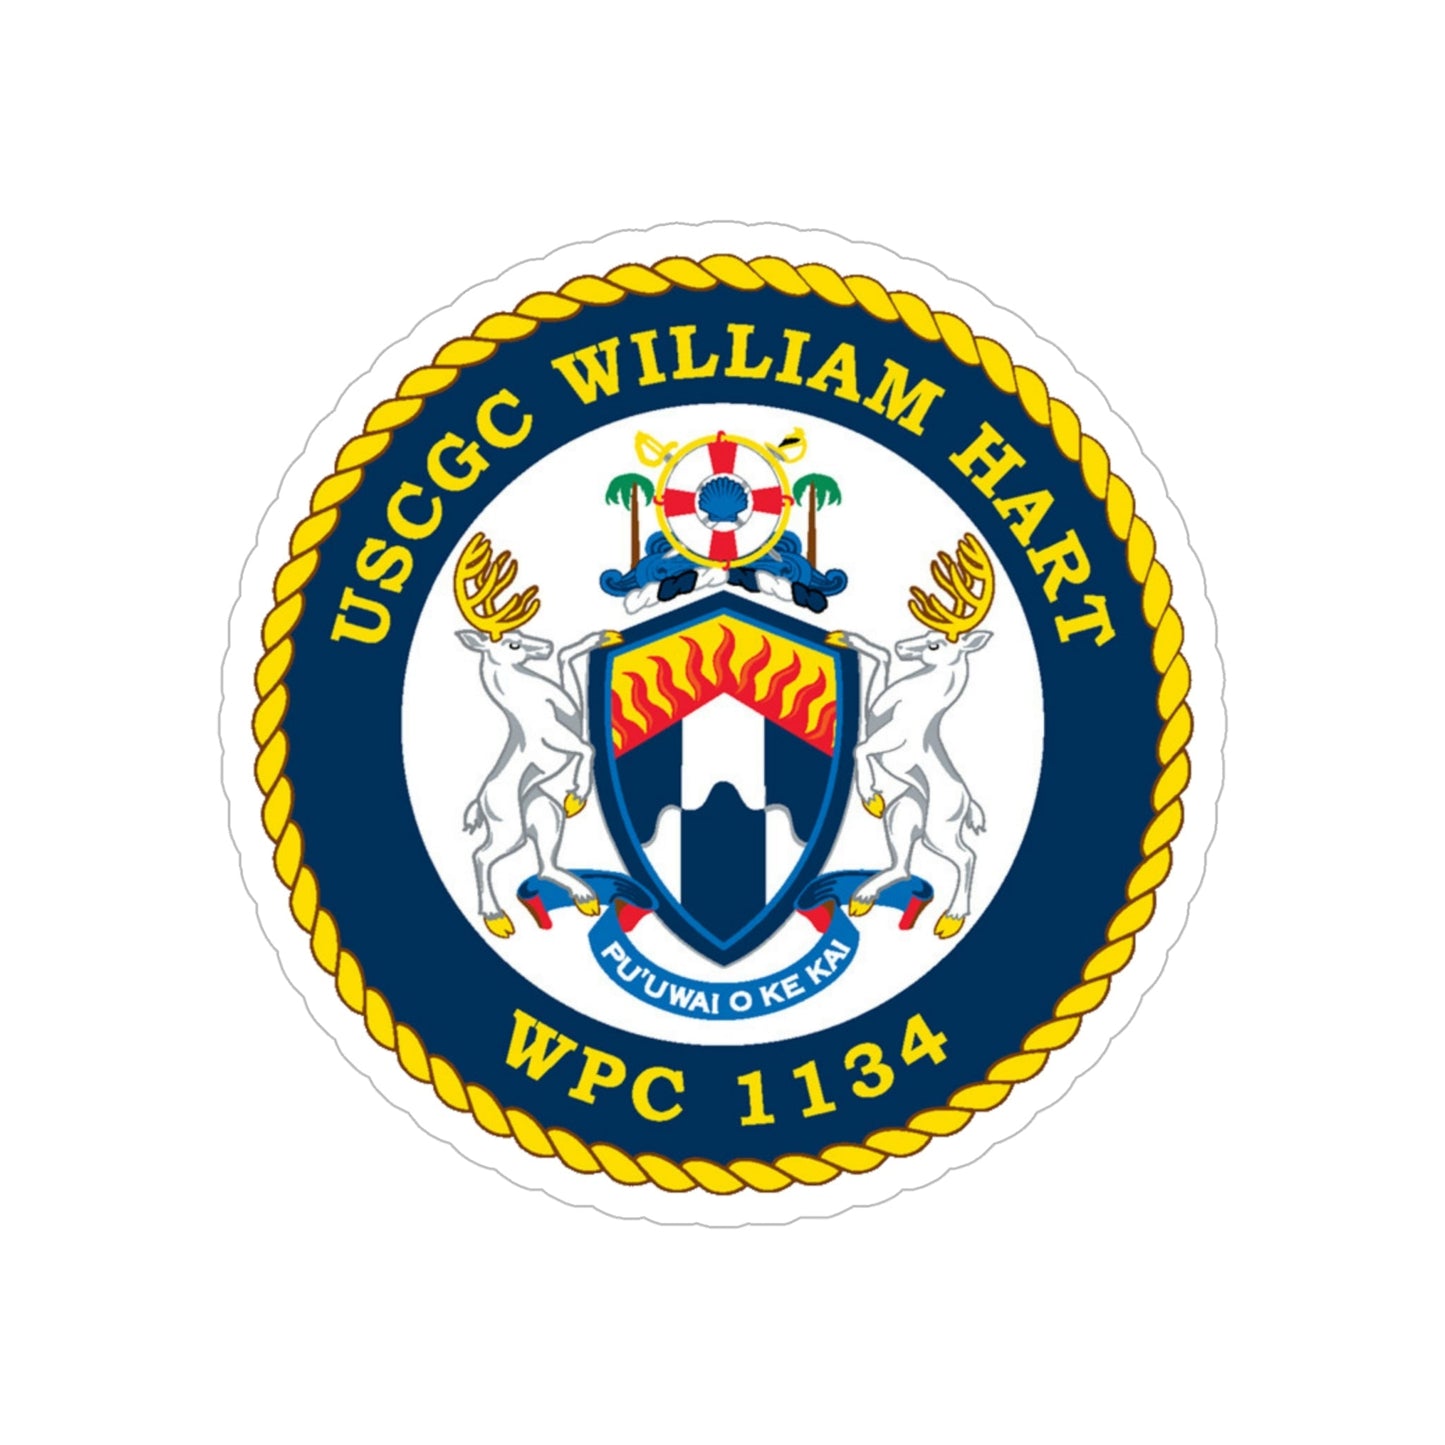 USCG C William Hart WPC 1134 (U.S. Coast Guard) Transparent STICKER Die-Cut Vinyl Decal-6 Inch-The Sticker Space